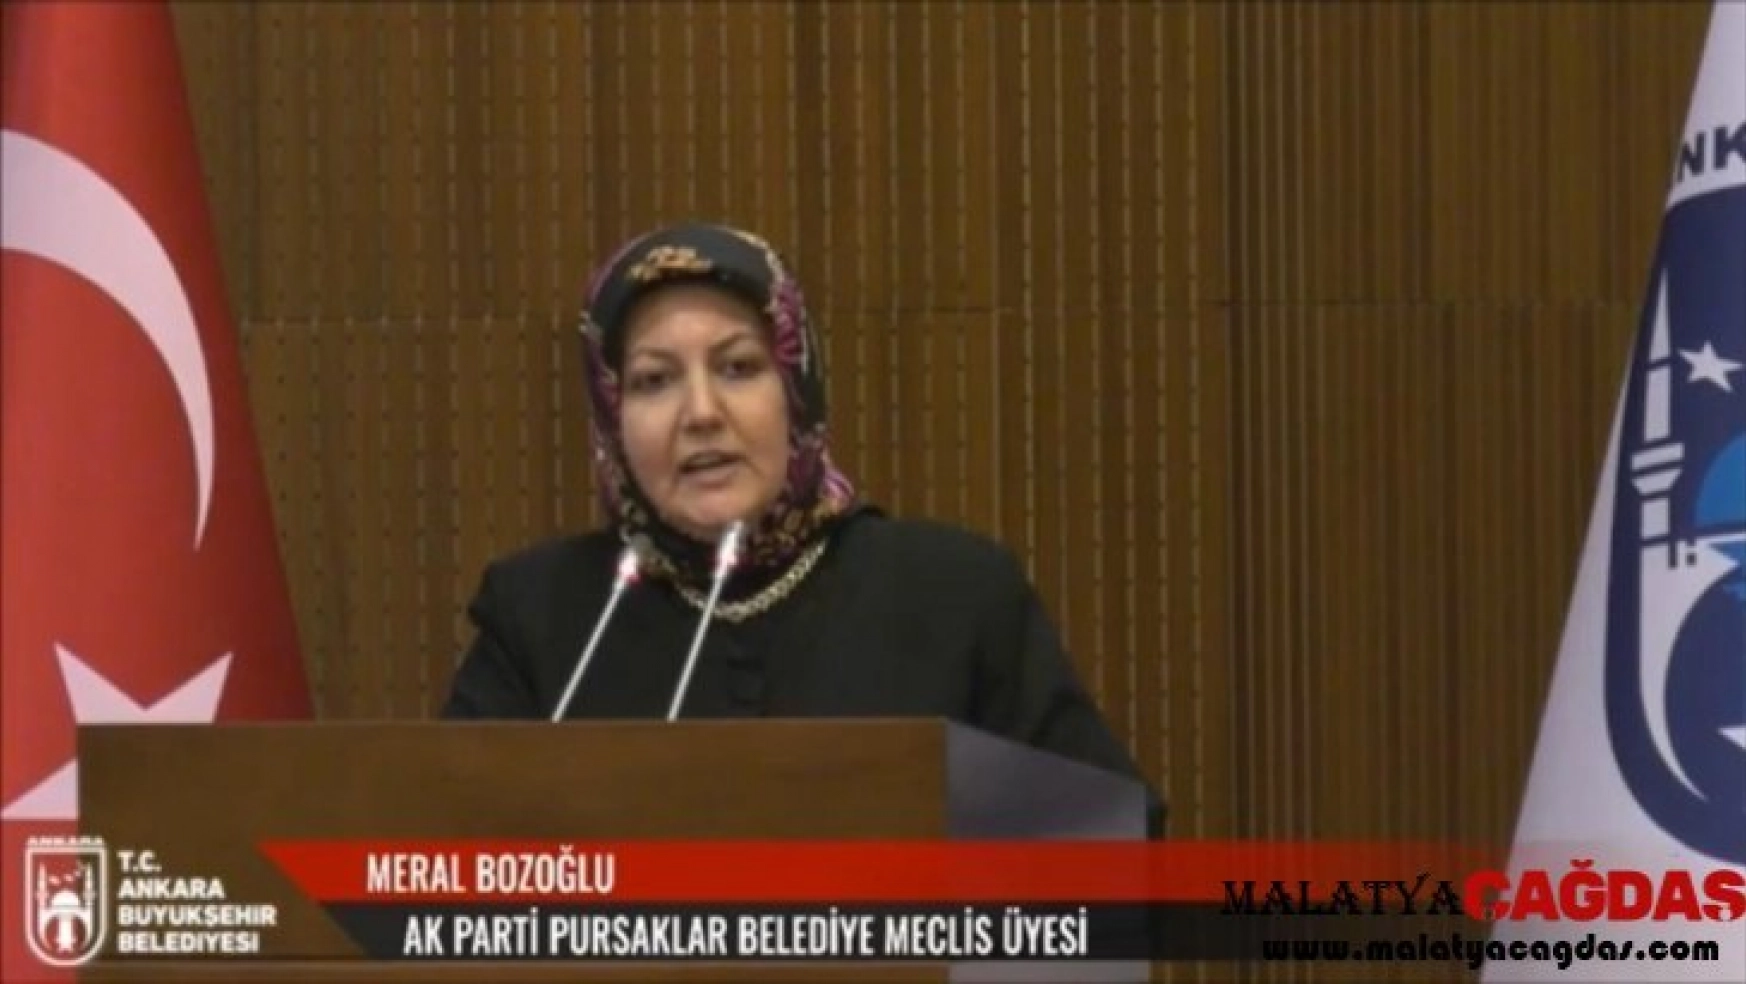 Bozoğlu: 'ESI, kadına haklar verilen AK Parti iktidarı dönemini 'ikinci kadın devrimi' olarak nitelendirmektedir'